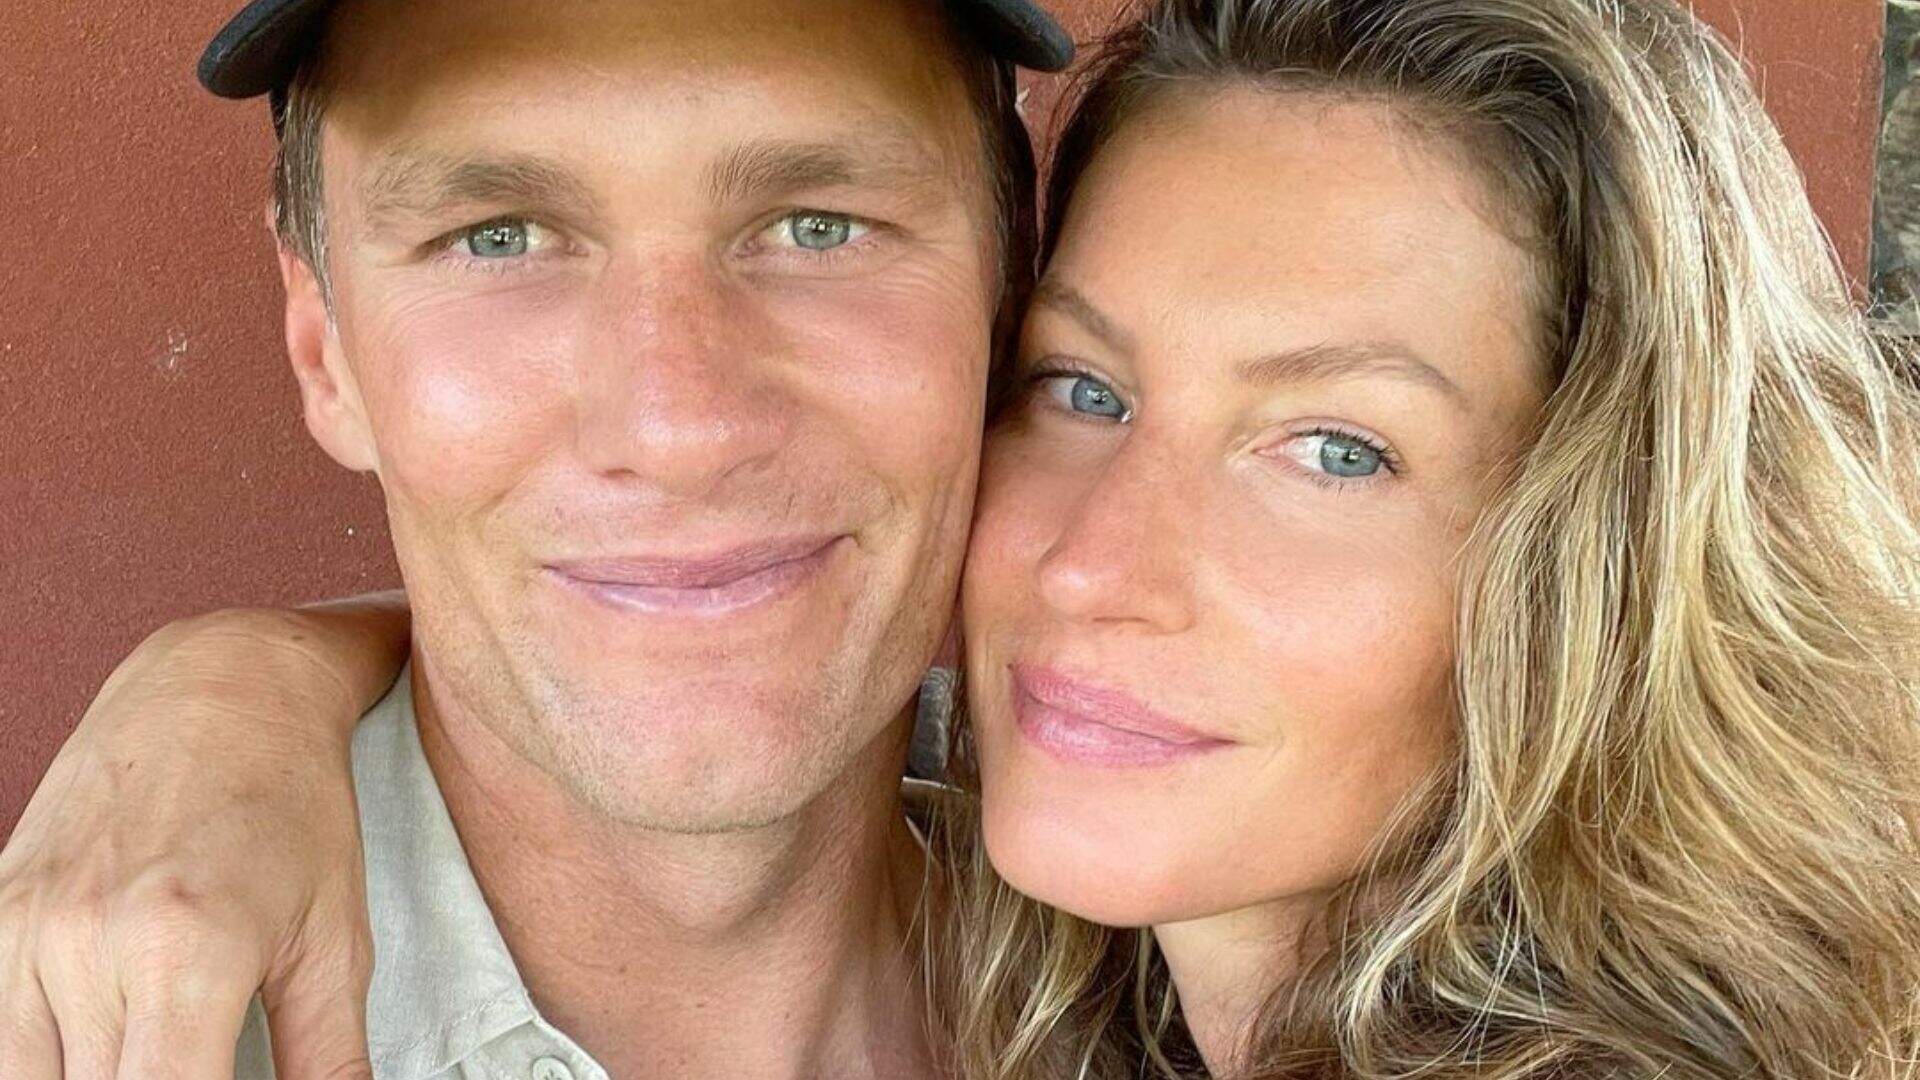 Gisele Bündchen se pronuncia sobre a separação de Tom Brady: “Finalizamos amigavelmente nosso divórcio”